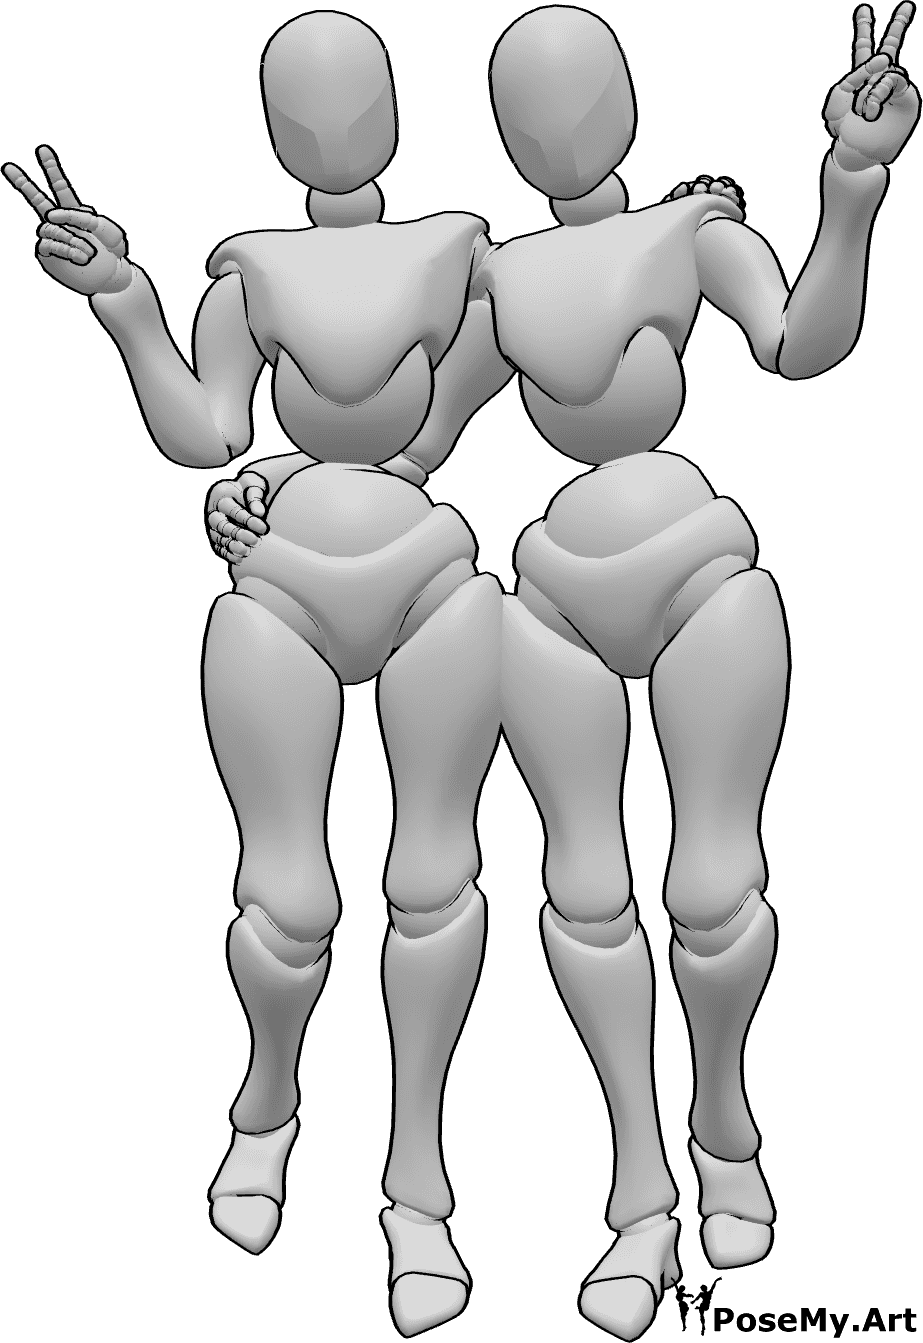 Posen-Referenz- Friedenszeichen-Pose der Frauen - Zwei Frauen stehen, umarmen sich und zeigen das Friedenszeichen